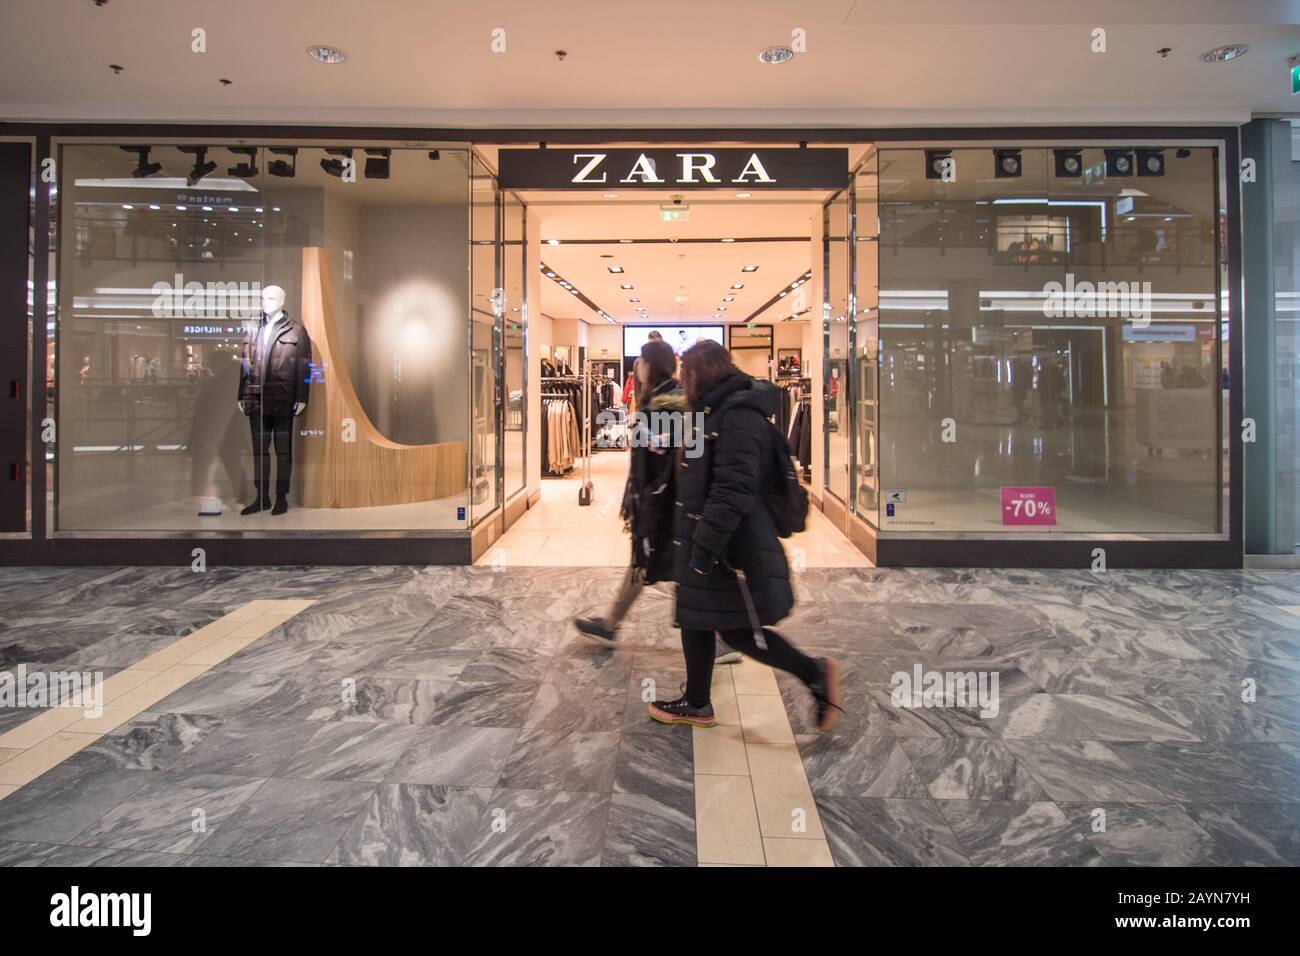 Zara shop facade in Tallinn, Estonia Stock Photo - Alamy